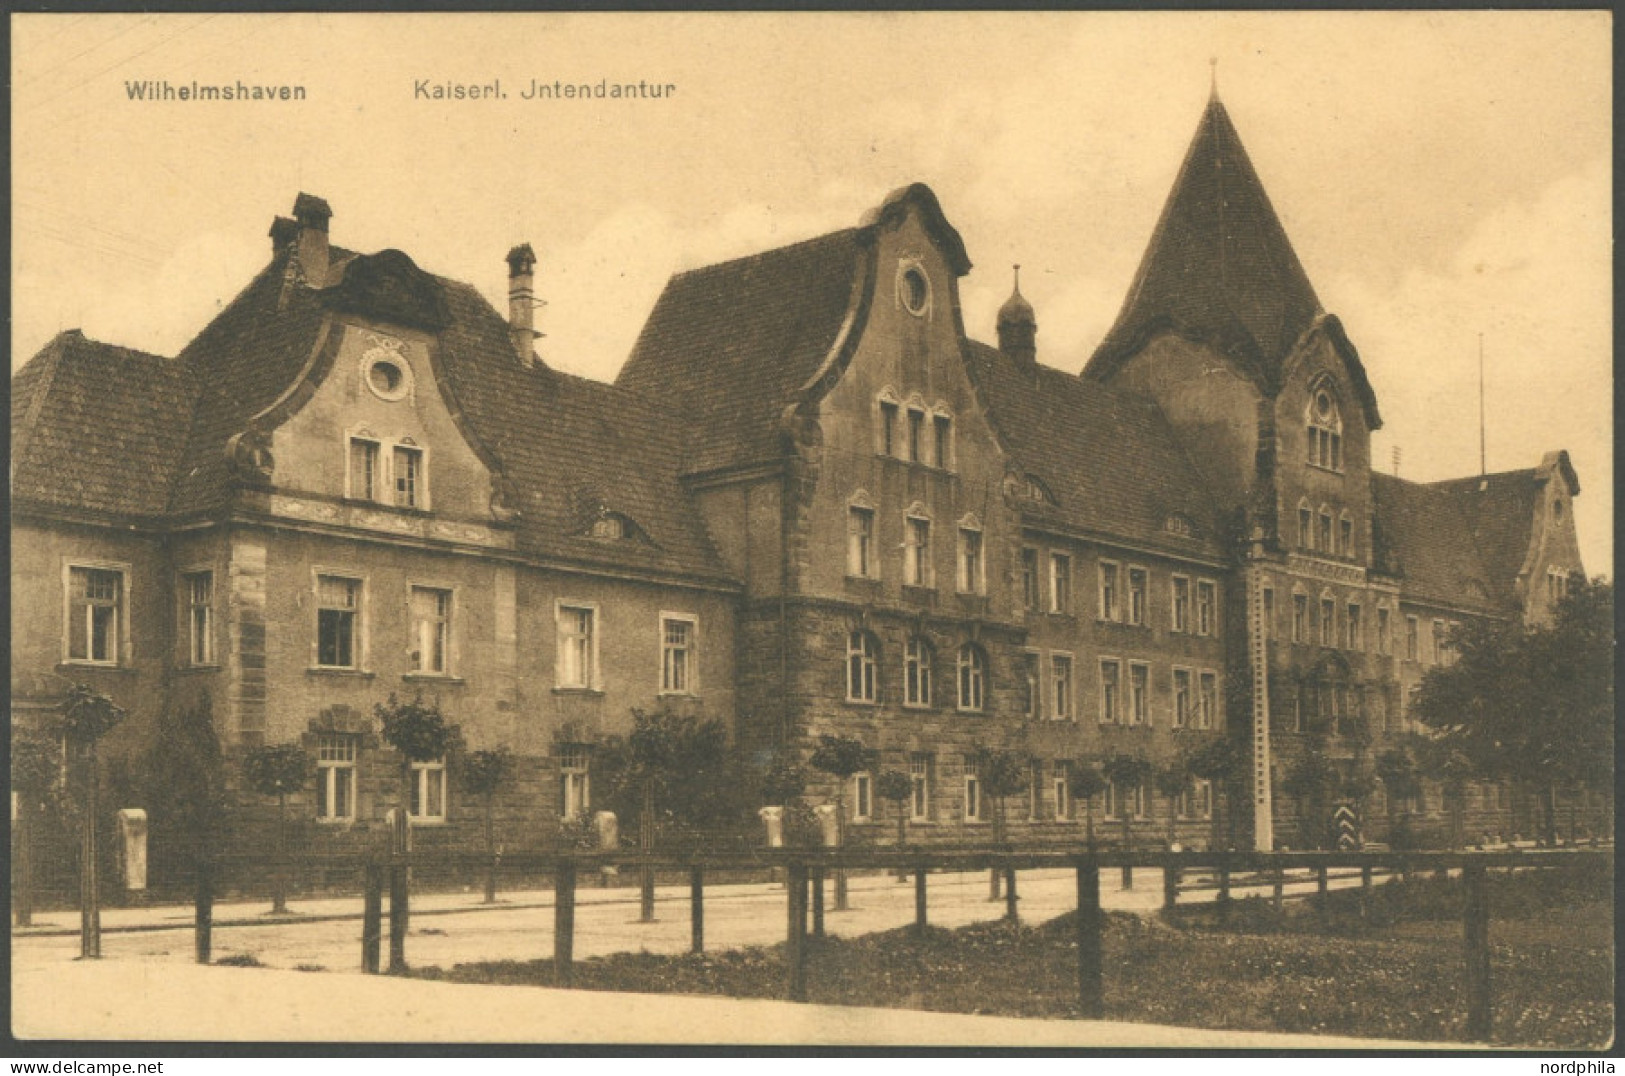 MSP VON 1914 - 1918 34 (S.M.S. MÜNCHEN), 2.4.15, FP-Ansichtskarte, Pracht - Maritime